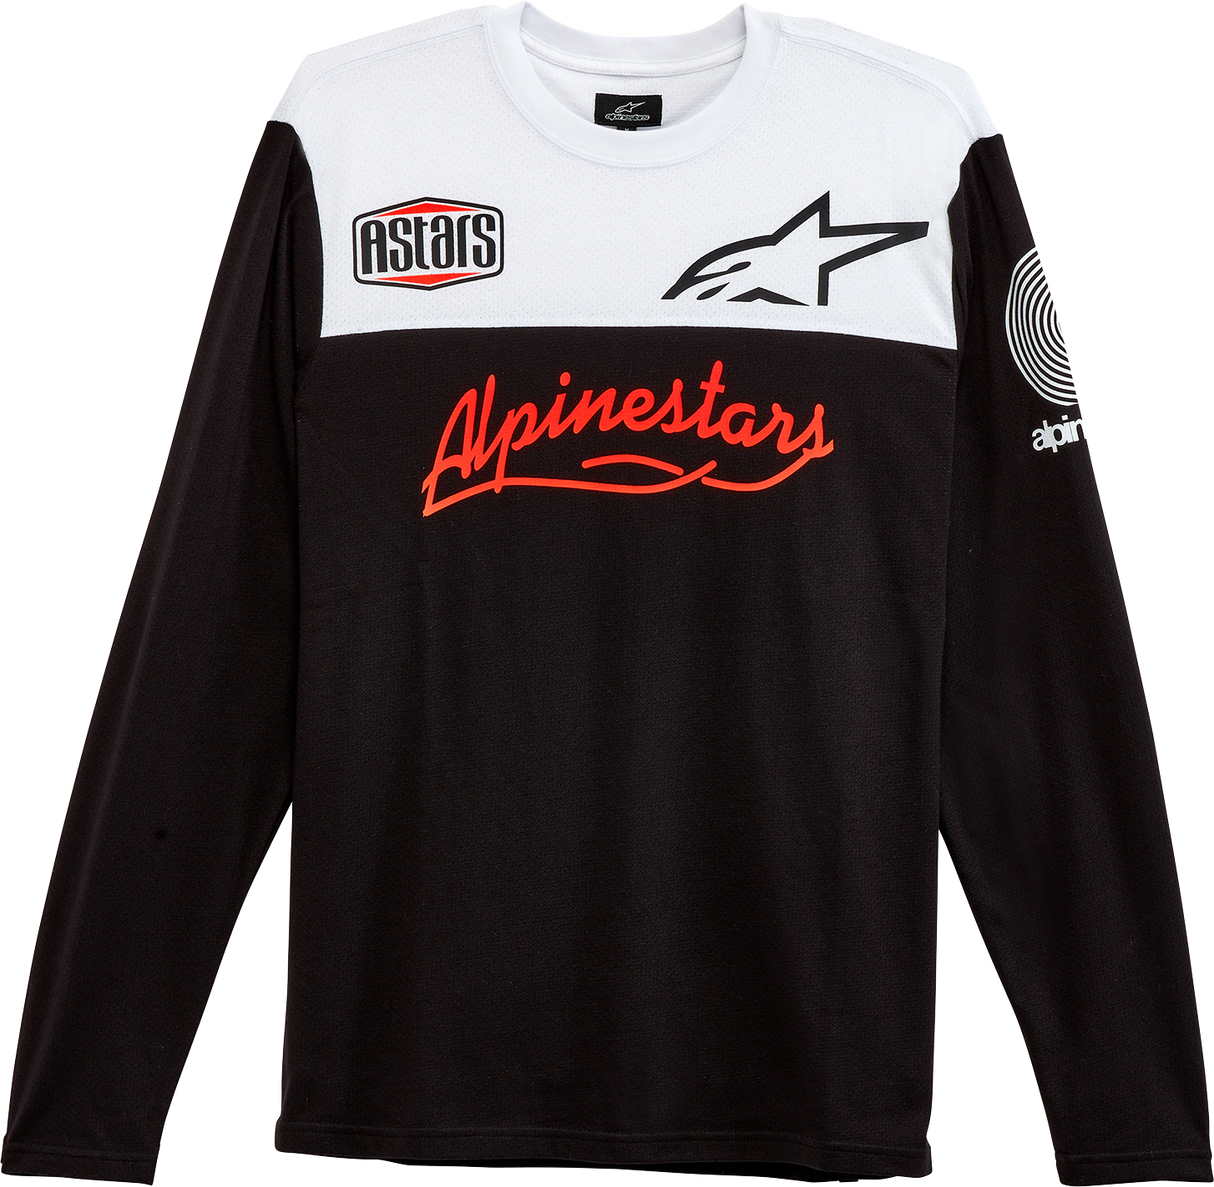 ALPINESTARS Elsewhere Jersey - Black - XL 1232-75000-10XL